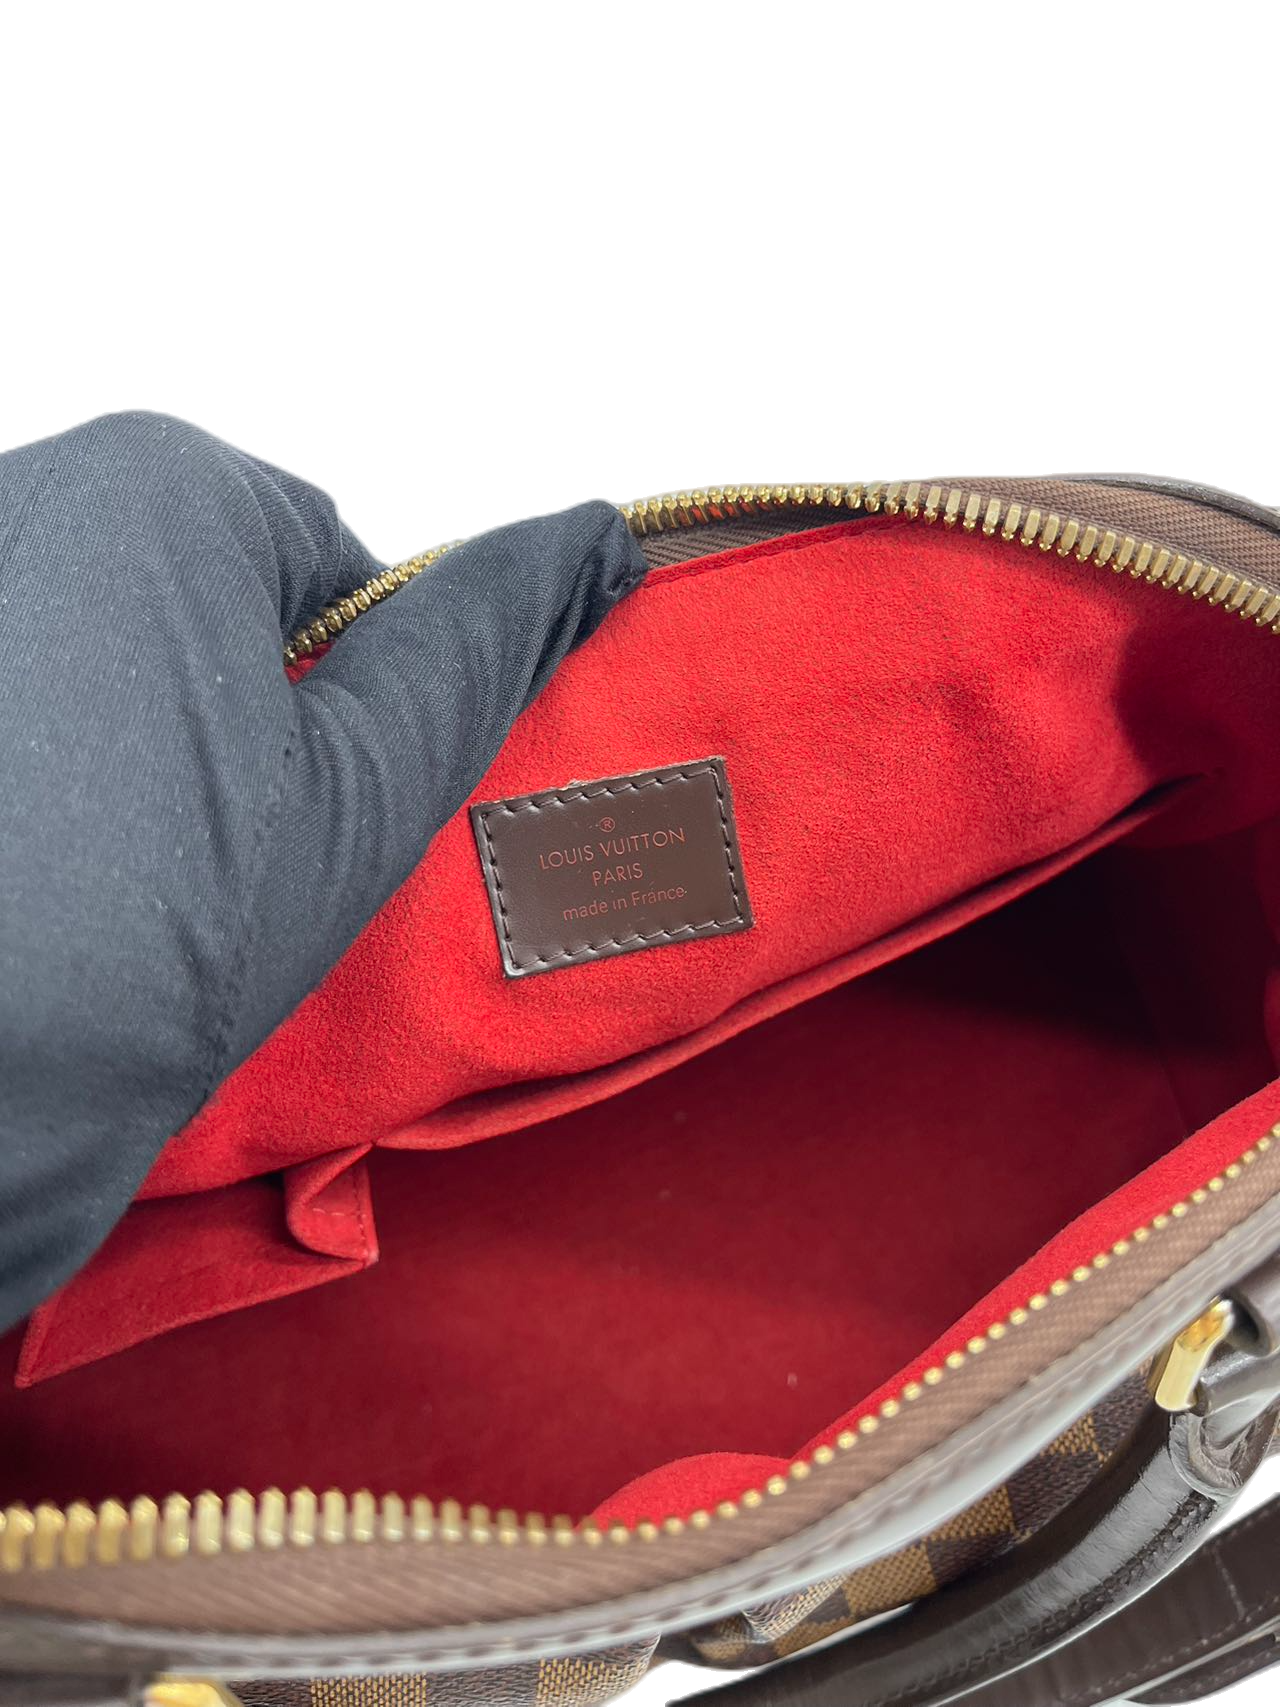 Preloved Louis Vuitton Damier Ebene Trevi PM Shoulder Bag